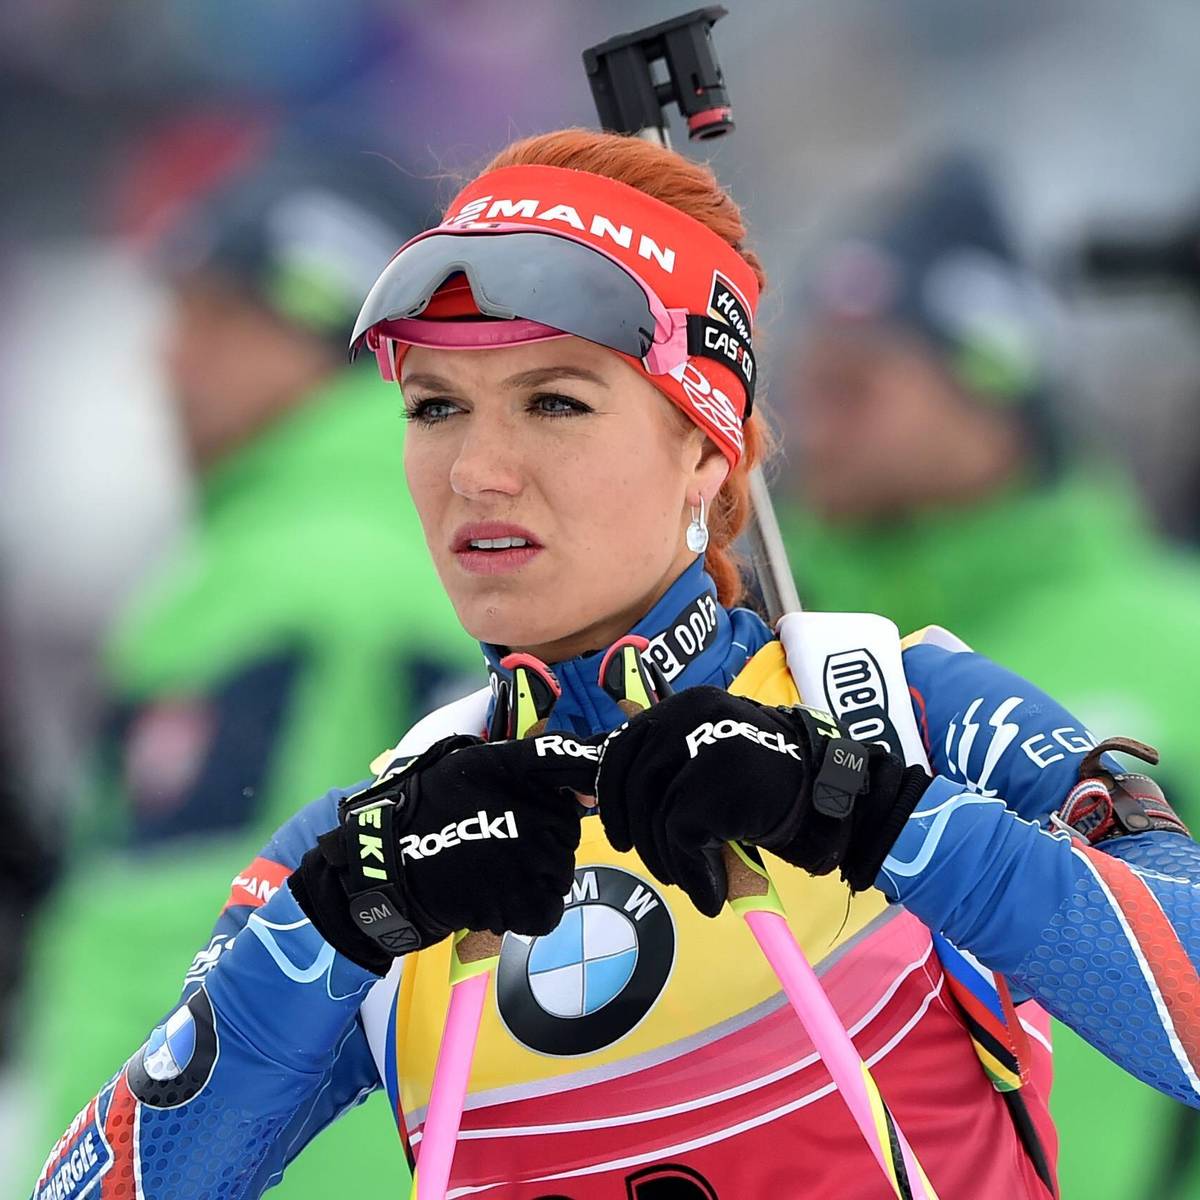 Die frühere Weltklasse-Biathletin Gabriela Soukalova ist mit dem Schrecken davon gekommen. Nach einer Radtour in den Alpen war sie für einen Tag verschollen, ehe sie von Bergrettern gerettet wurde. 